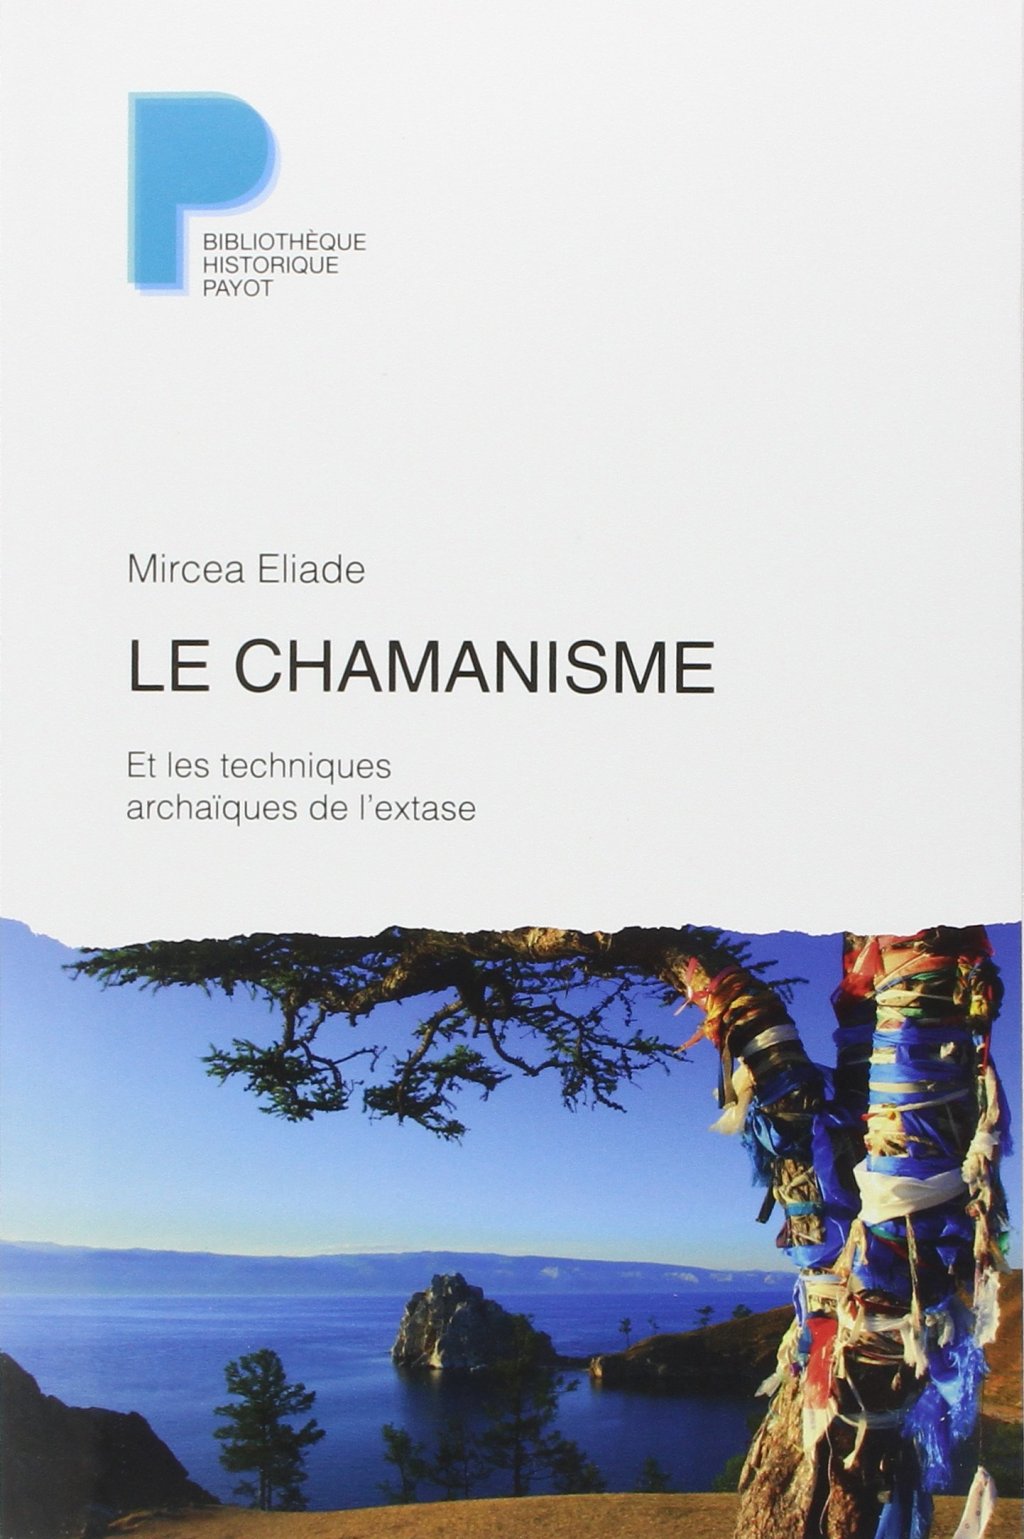 image-9212057-Le_chamanisme_et_les_techniques_archaiques_de_lextase_Eliade.w640.jpg